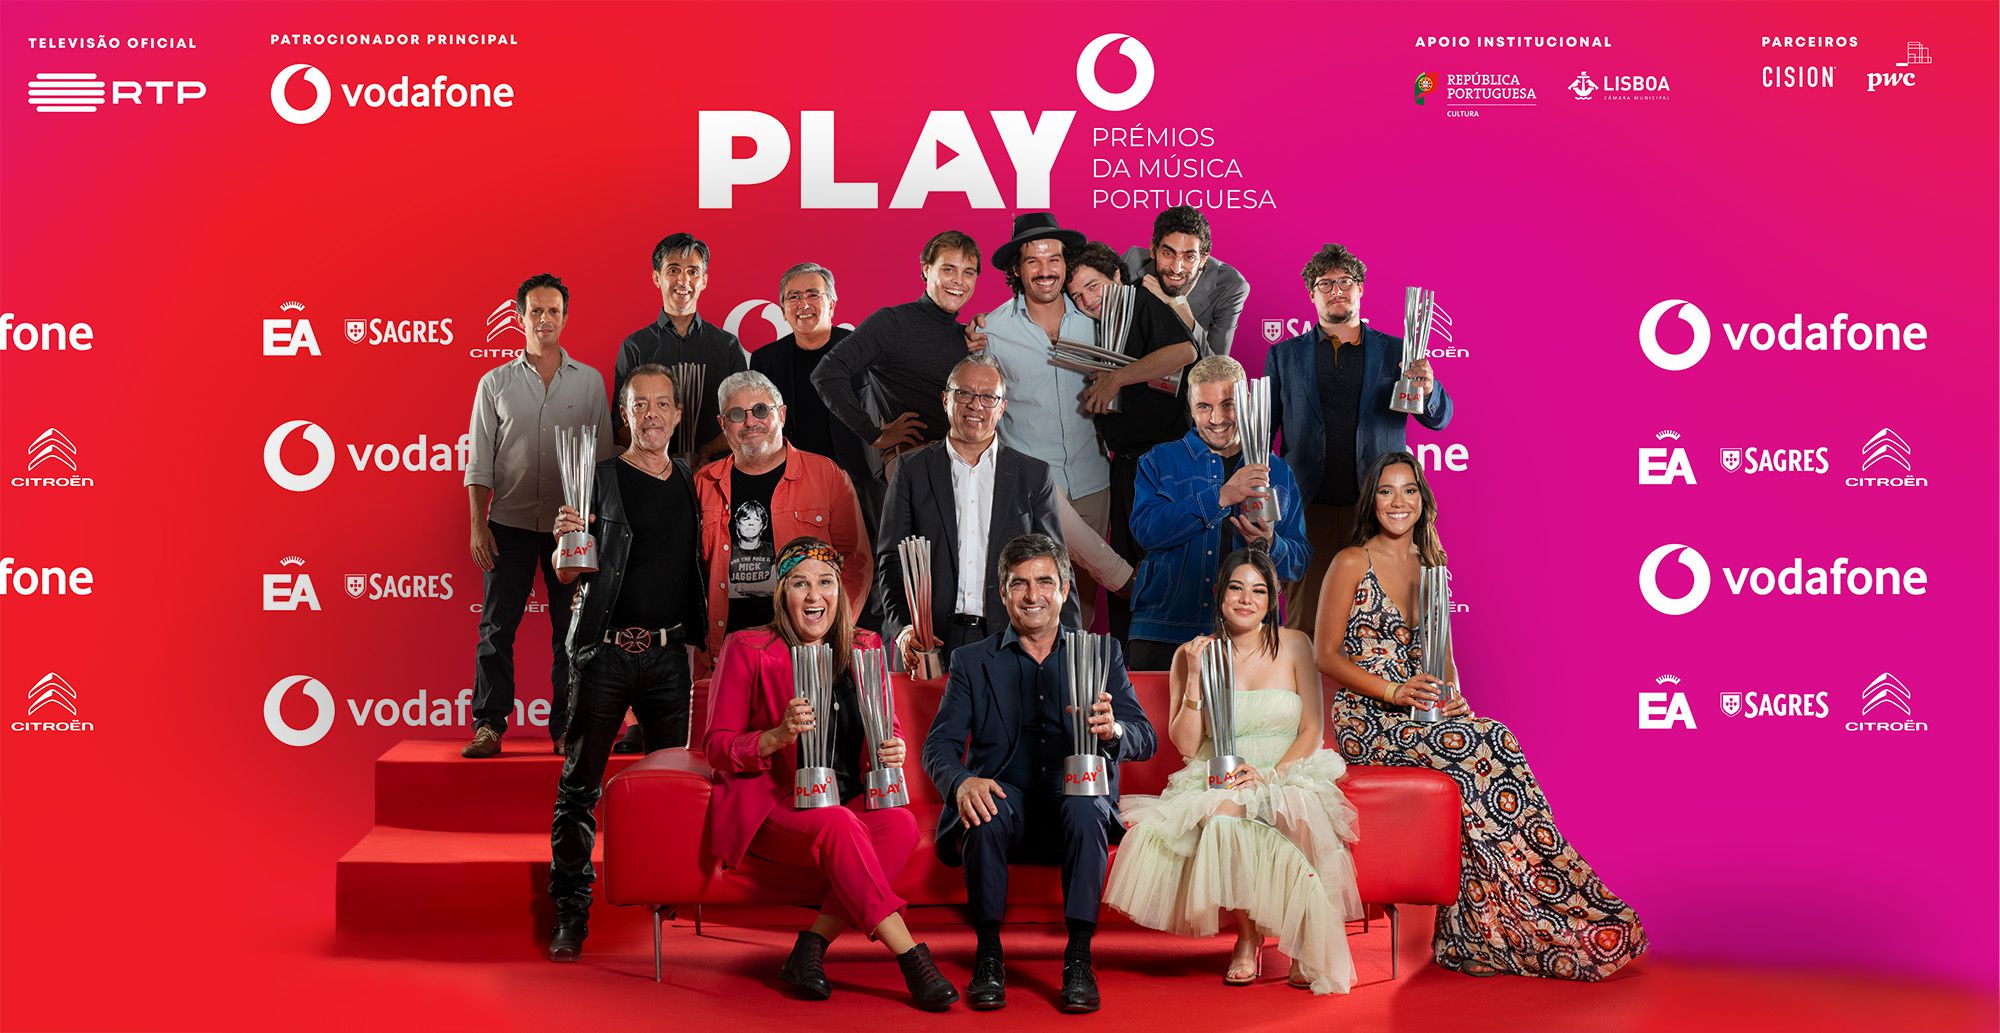 Promotores dos prémios Play criam academia e Prémio Vodafone Canção do Ano passa a ter 6 nomeados